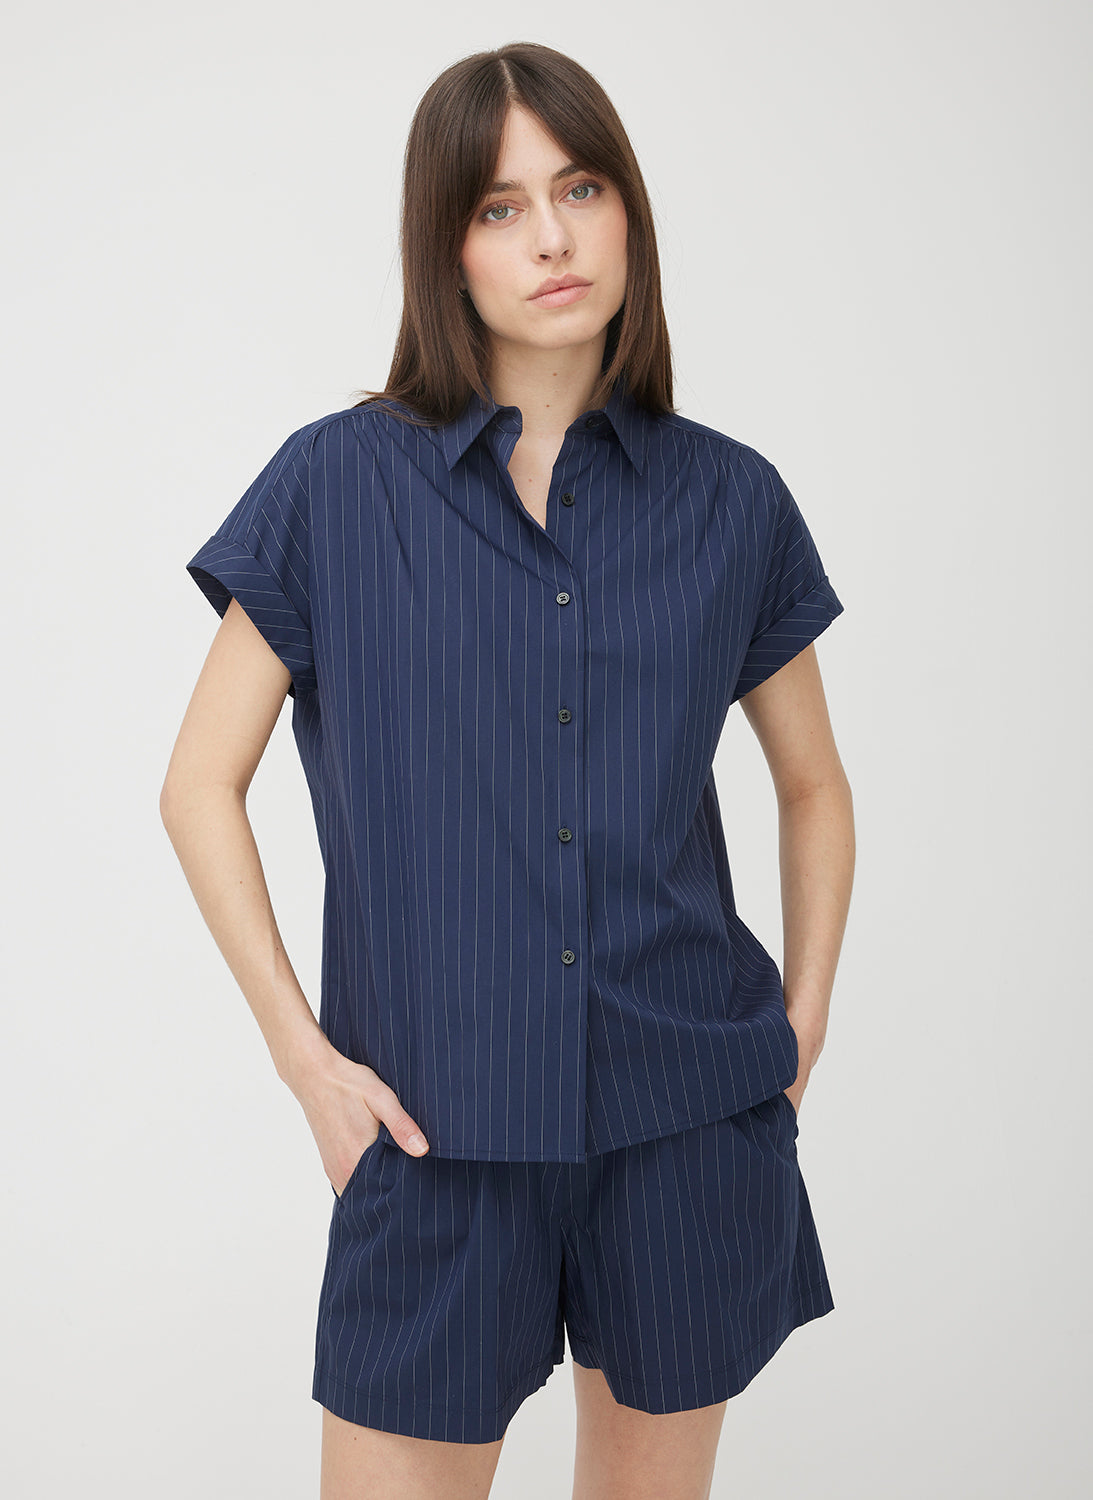 Marbella Short Sleeve Shirt ?? | S || Navy/Bright White Stripe